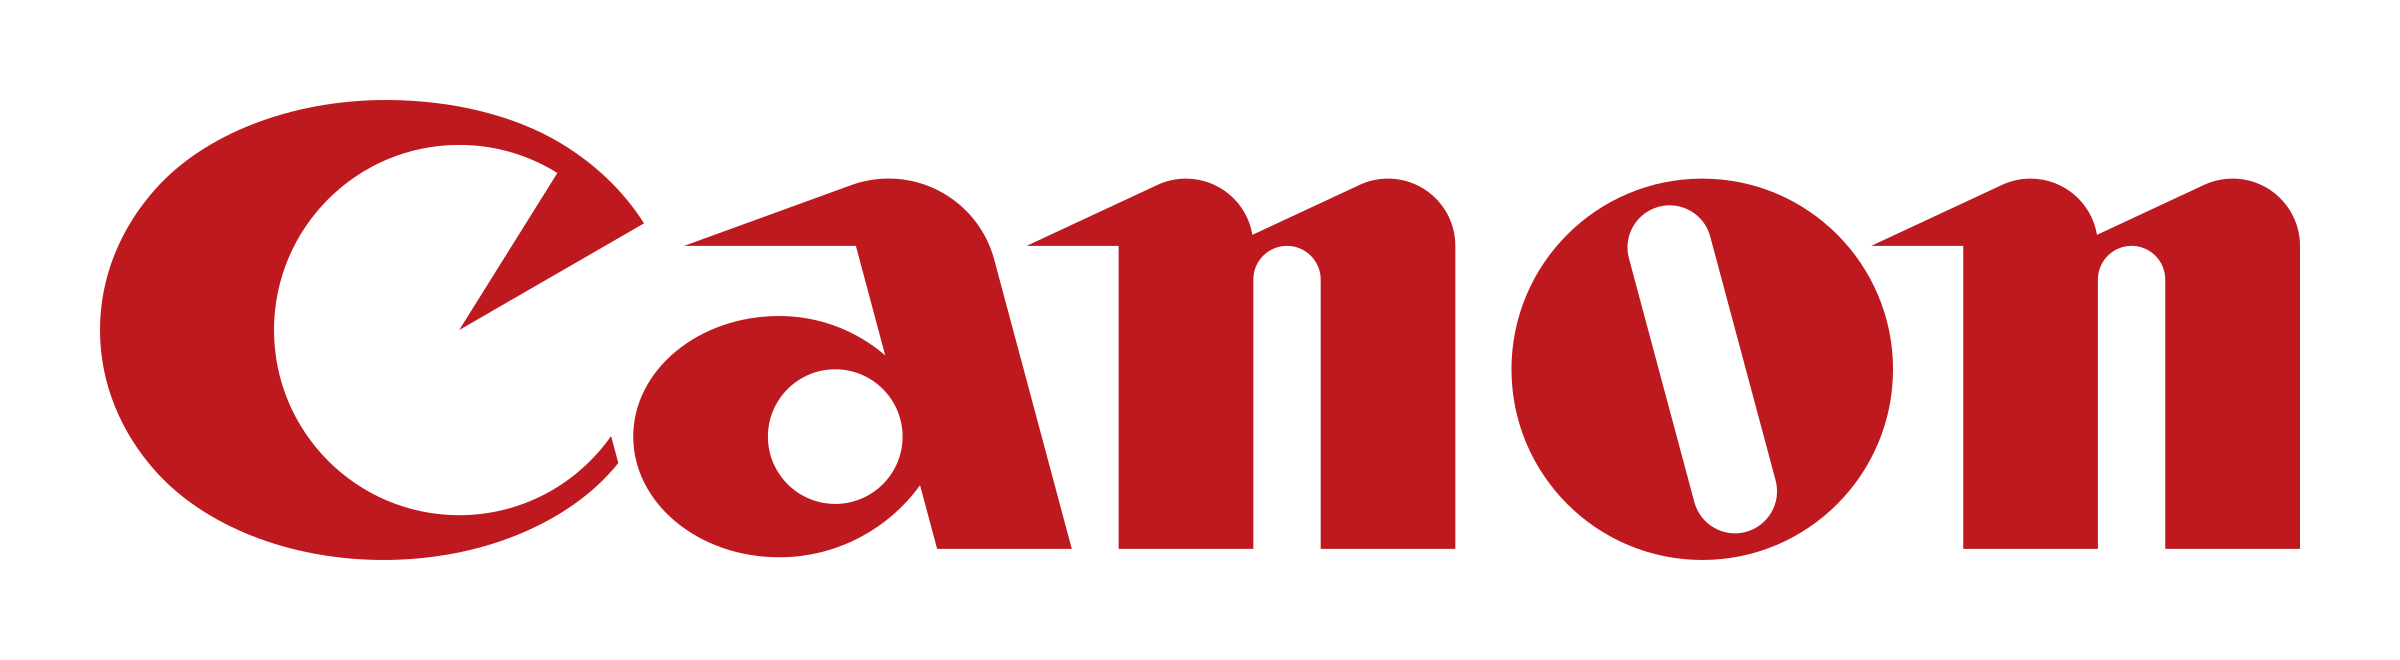 Canon Logo Transparent Images